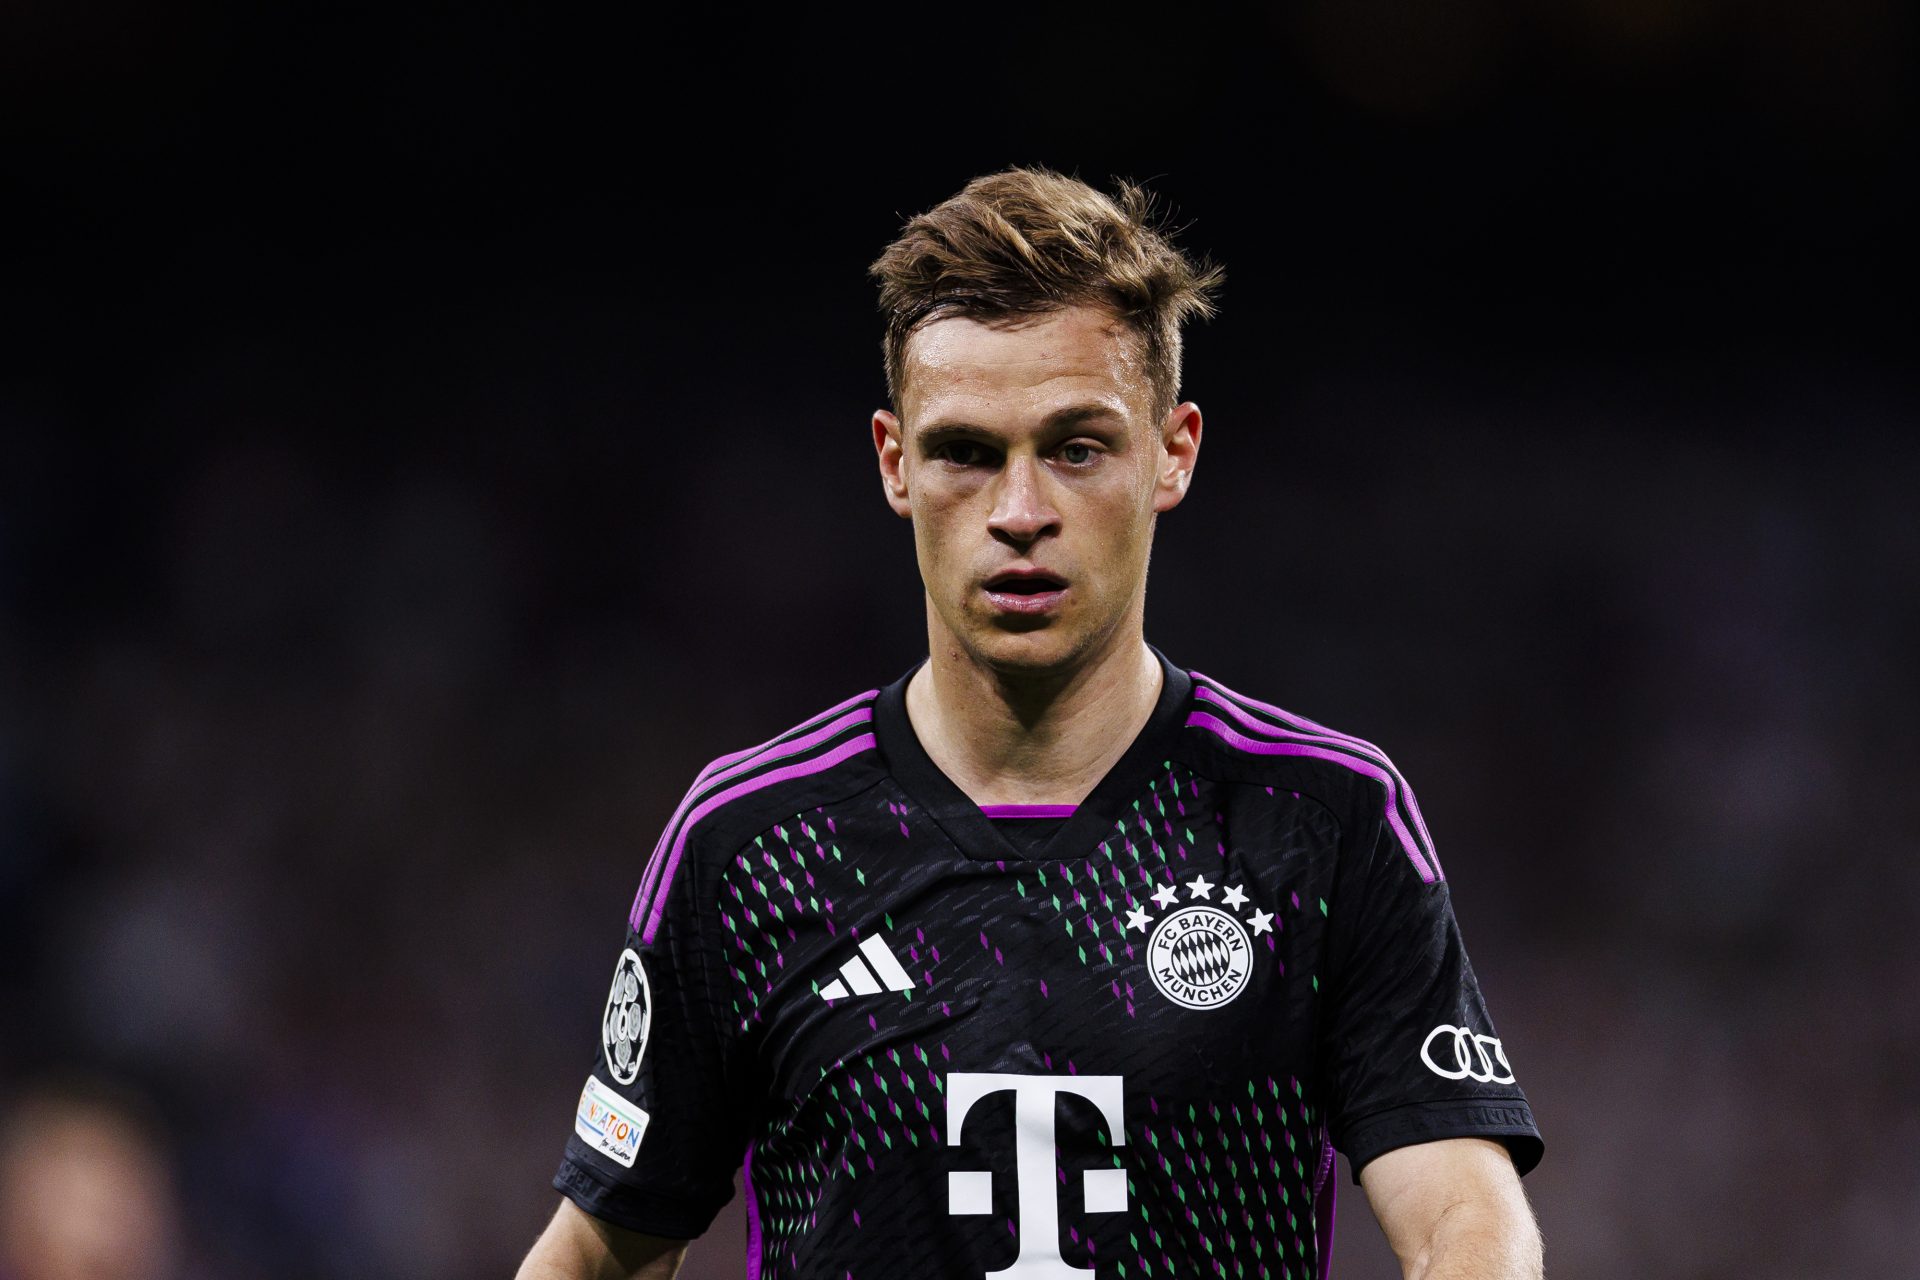 6. Joshua Kimmich - Bayern Munich 